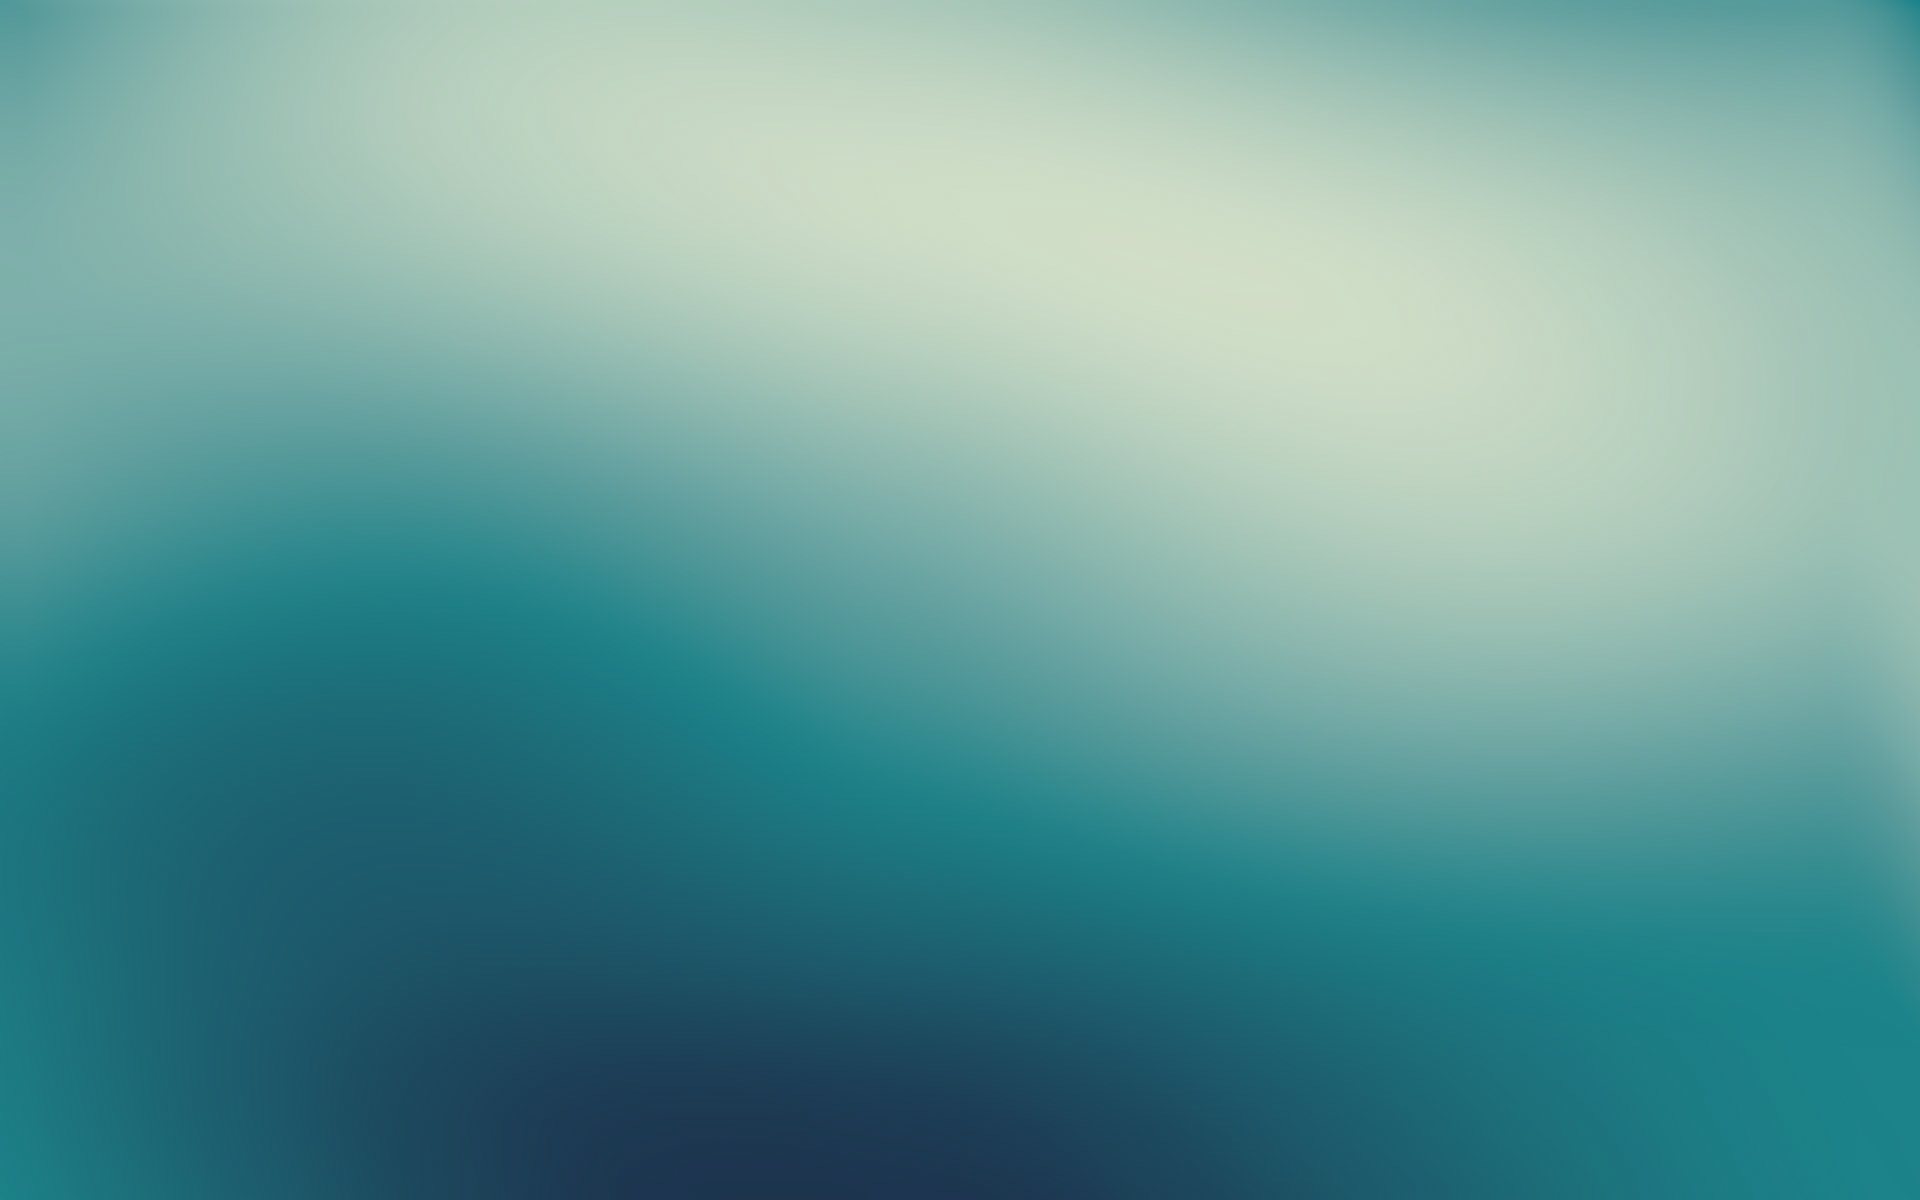 abstract, blue, gaussian blur - desktop wallpaper